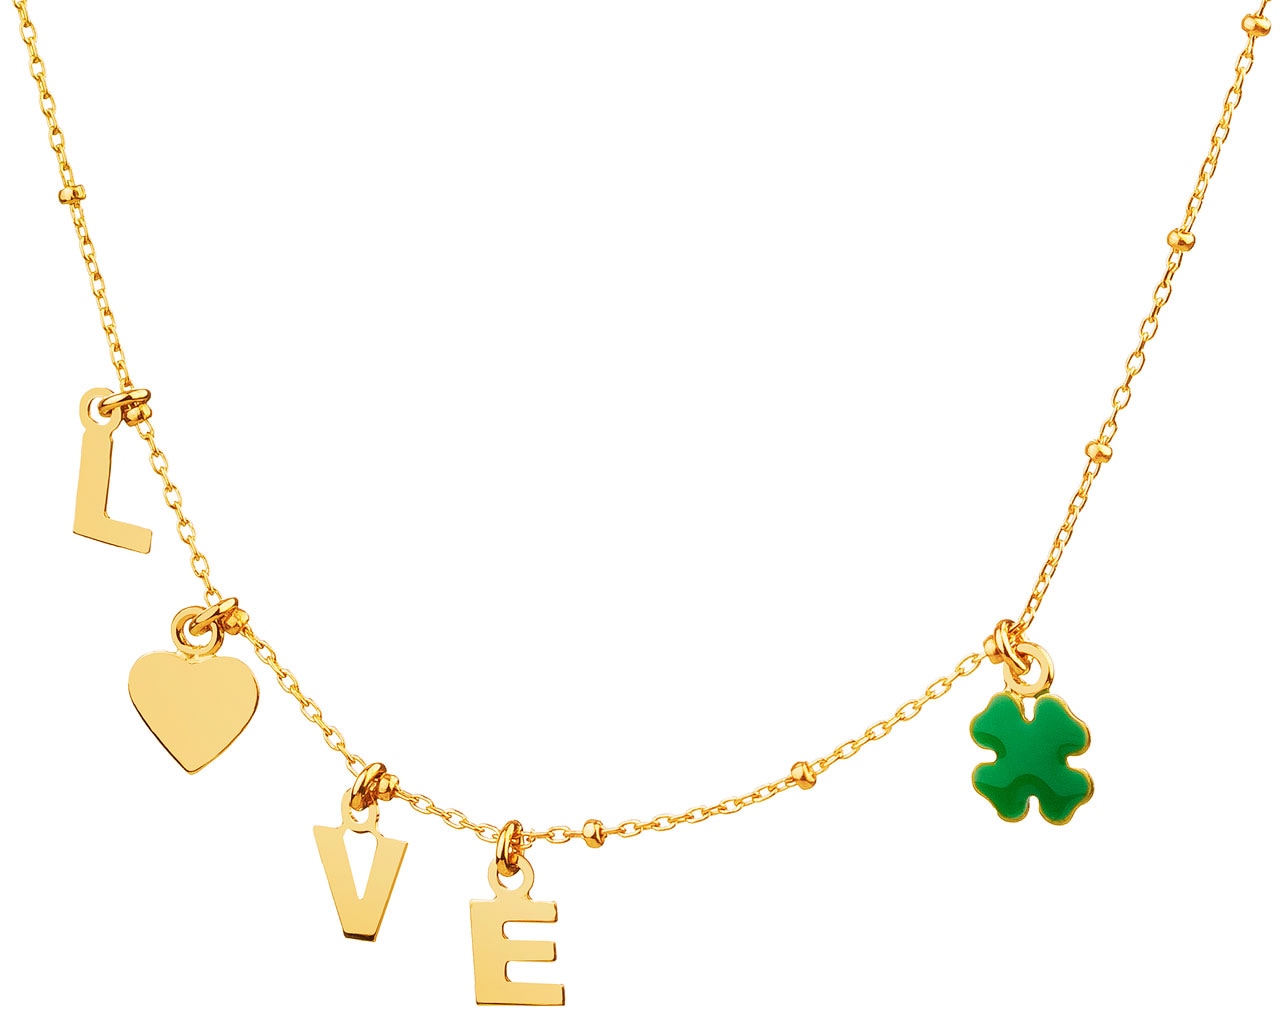 Zlatý náhrdelník se smaltem - Love, srdce, čtyřlístek